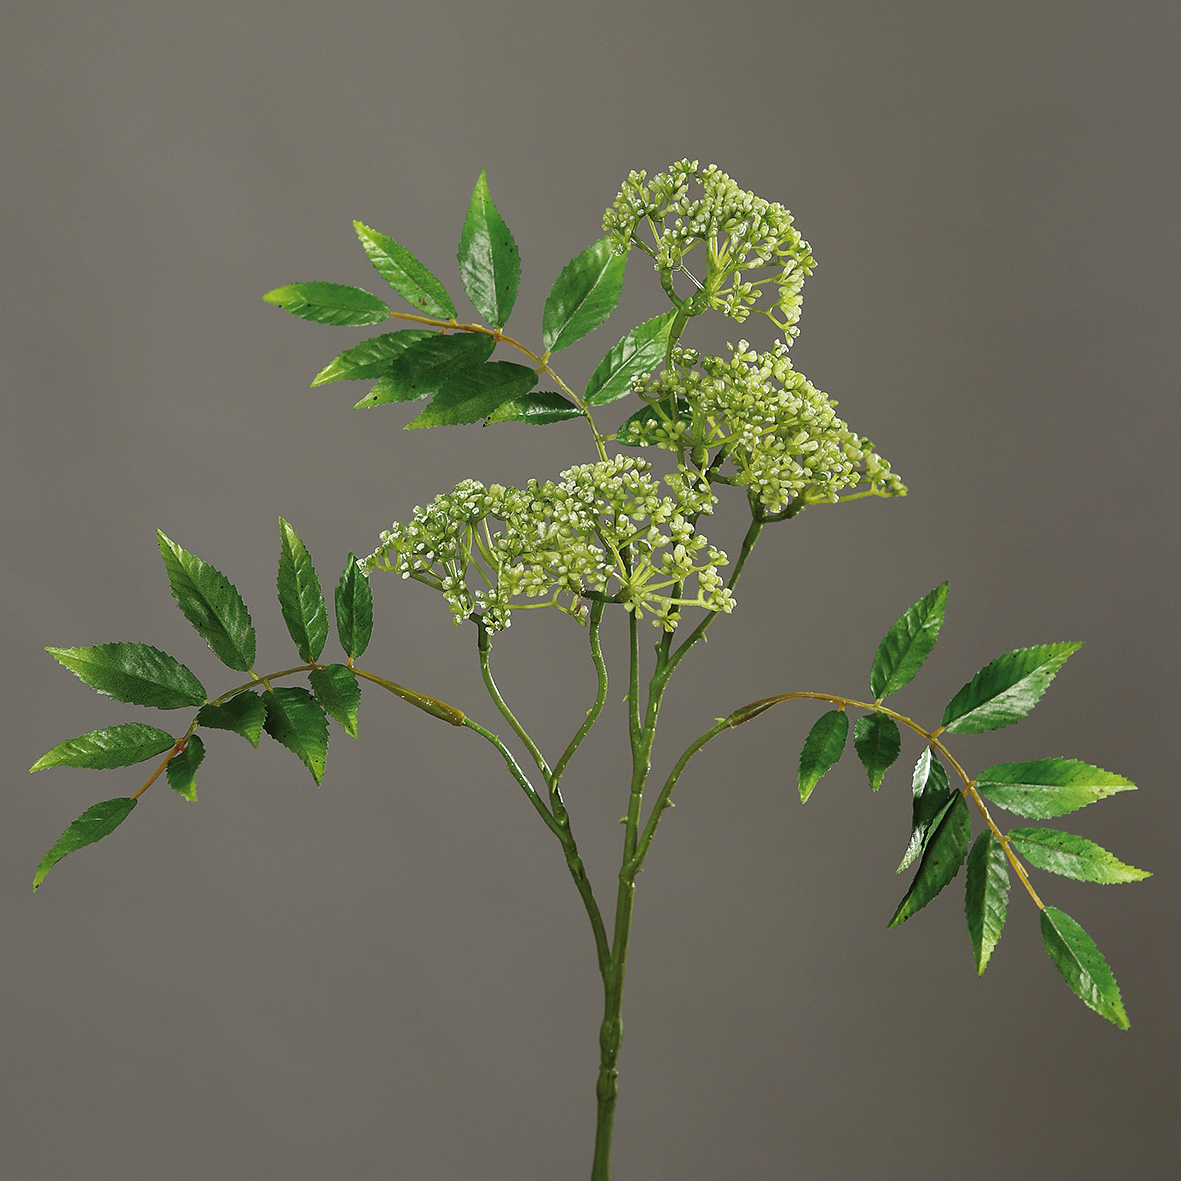 Asclepiazweig 75cm weiß-grün DP Kunstblumen künstlicher Zweig Asclepia Seidenpflanze Kunstzweig